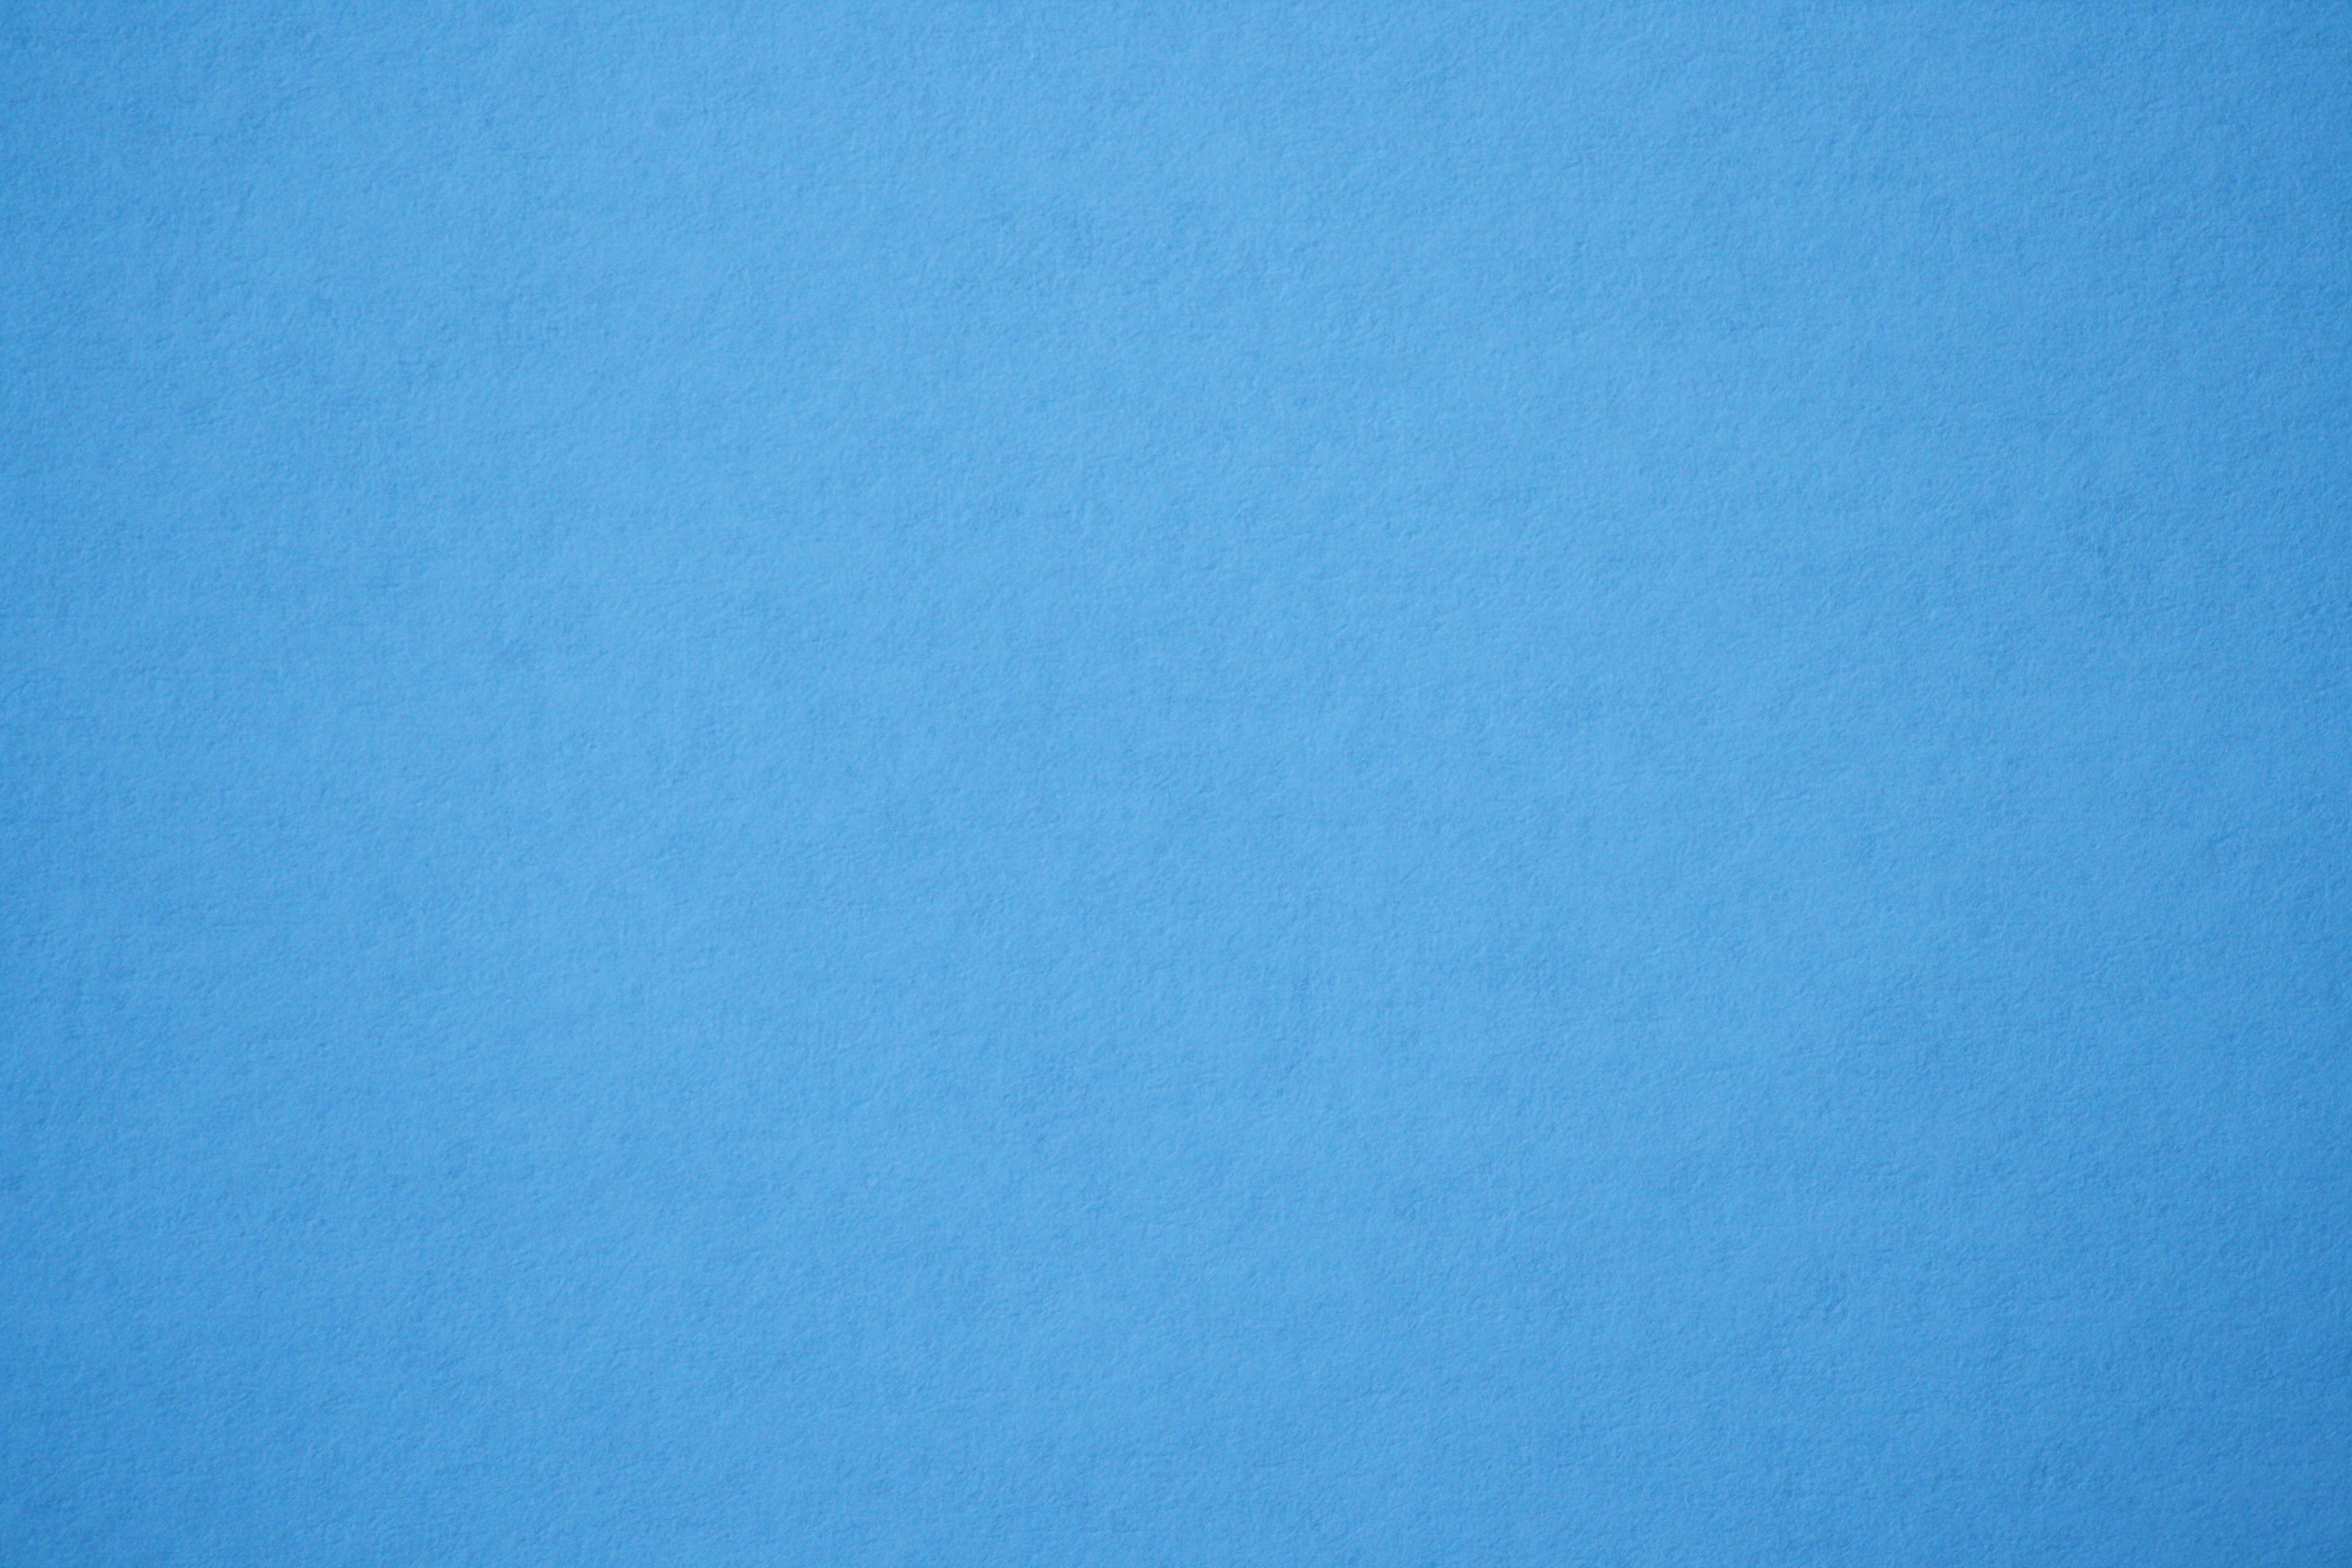 light-blue-paper-texture-picture-free-photograph-photos-public-domain